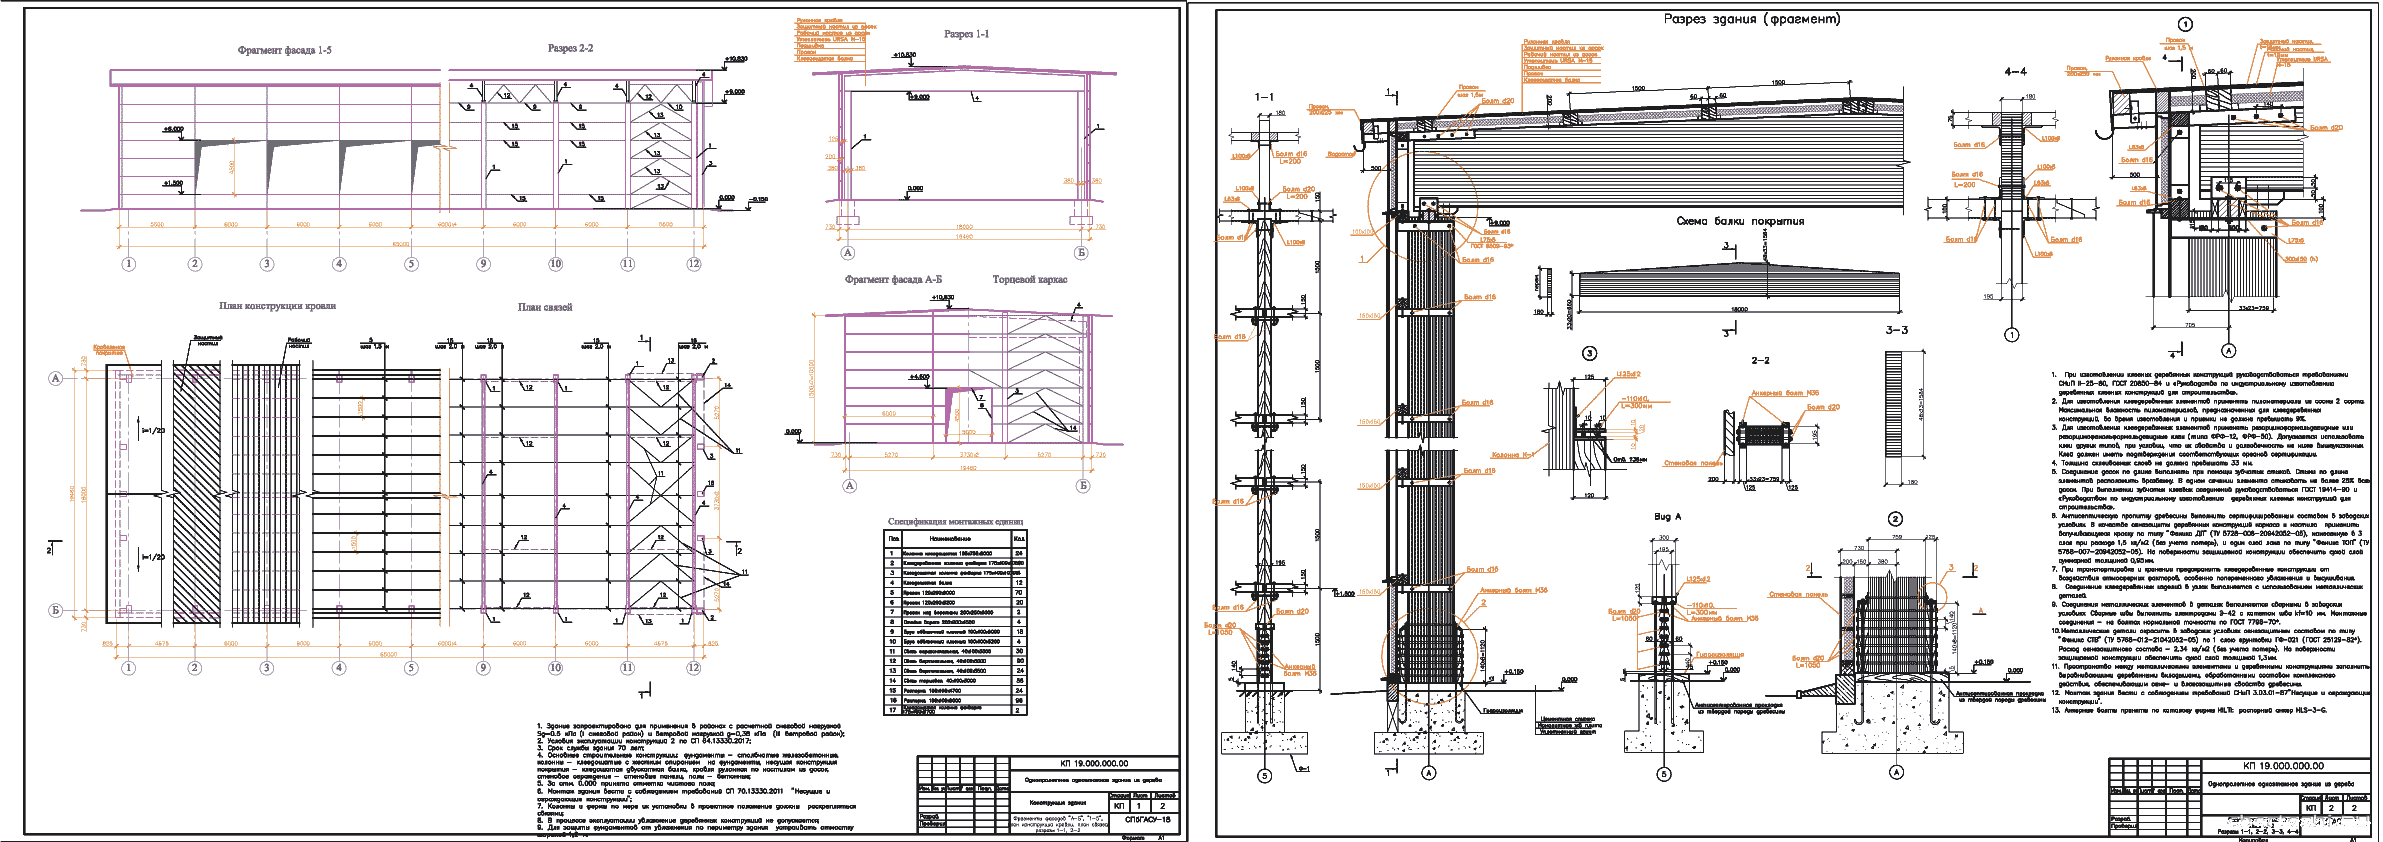 Курсовой проект - Деревянный каркас одноэтажного однопролетного промышленного здания 65 х 18 м